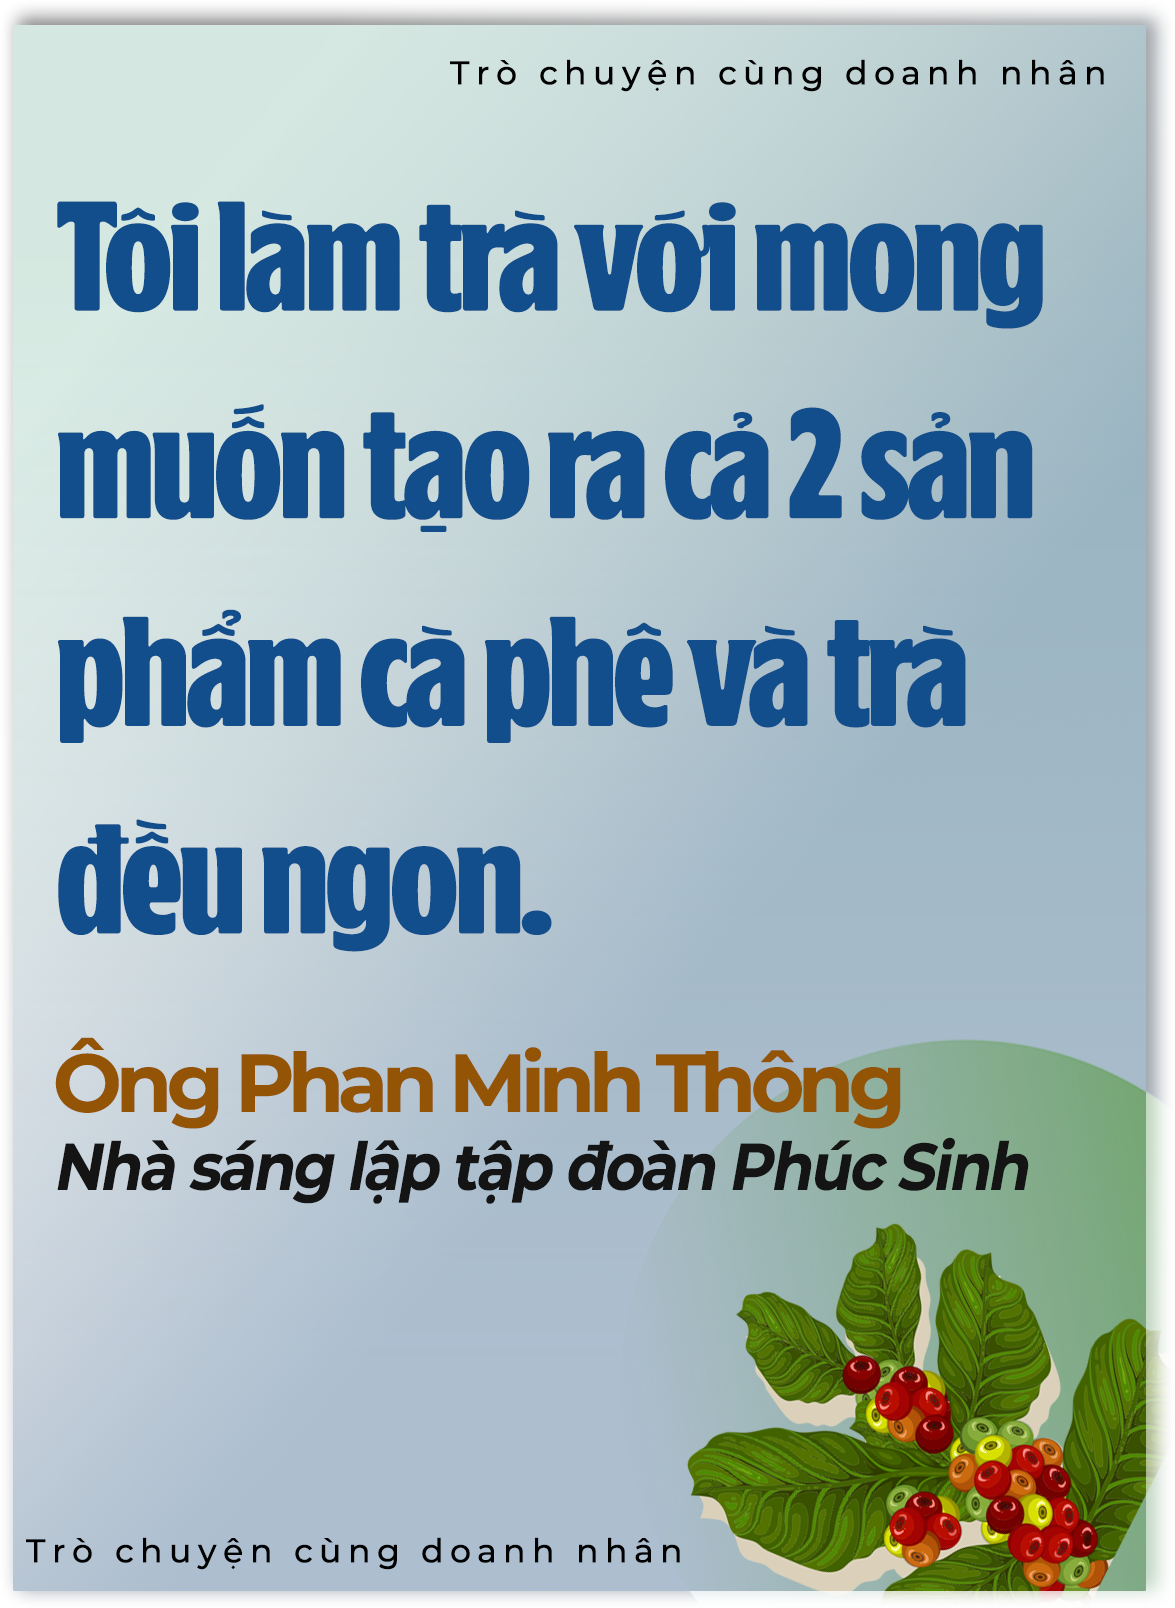 'Vua tiêu' Phan Minh Thông: Tôi nhìn thấy vàng ròng từ nông nghiệp - 4